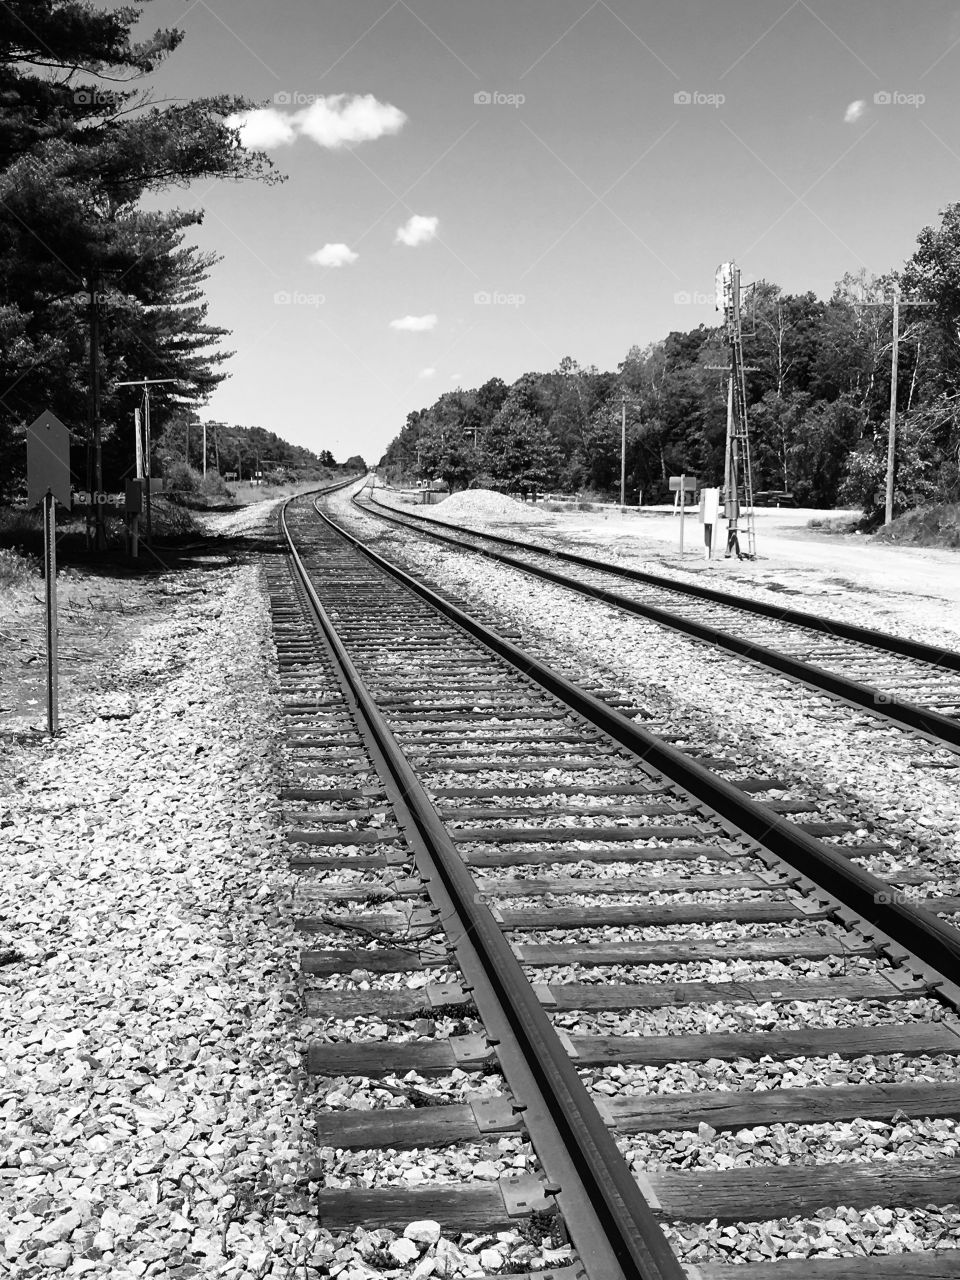 Isolated train tracks, serenity